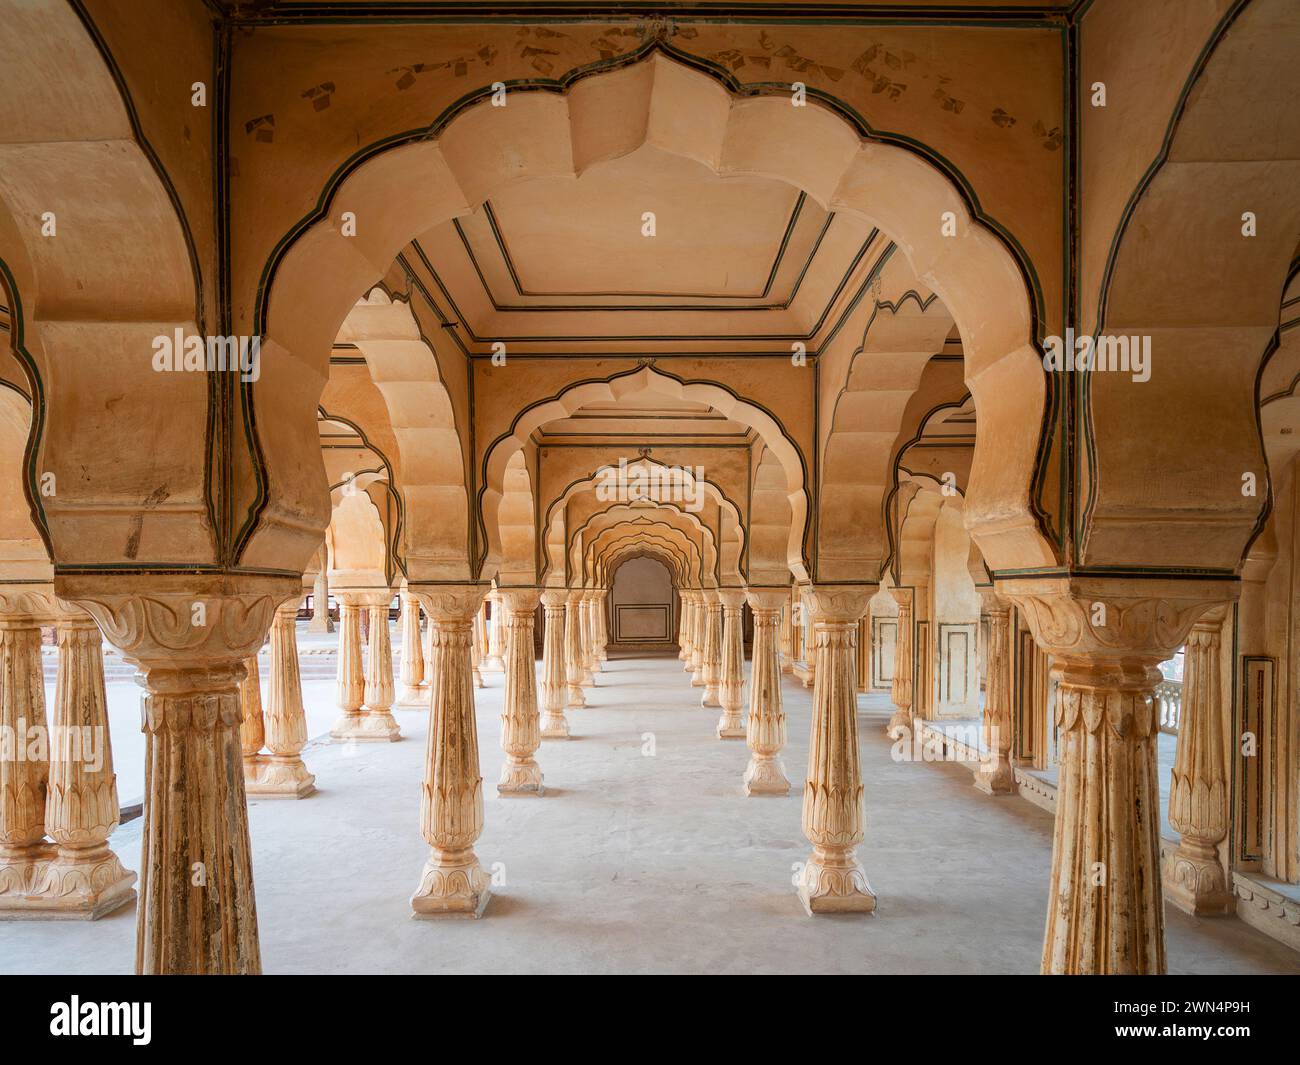 Storica sala Sattais Katcheri nel forte Amber vicino a Jaipur, Rajasthan, India. Il forte Amber è la principale attrazione turistica nell'area di Jaipur. Foto Stock